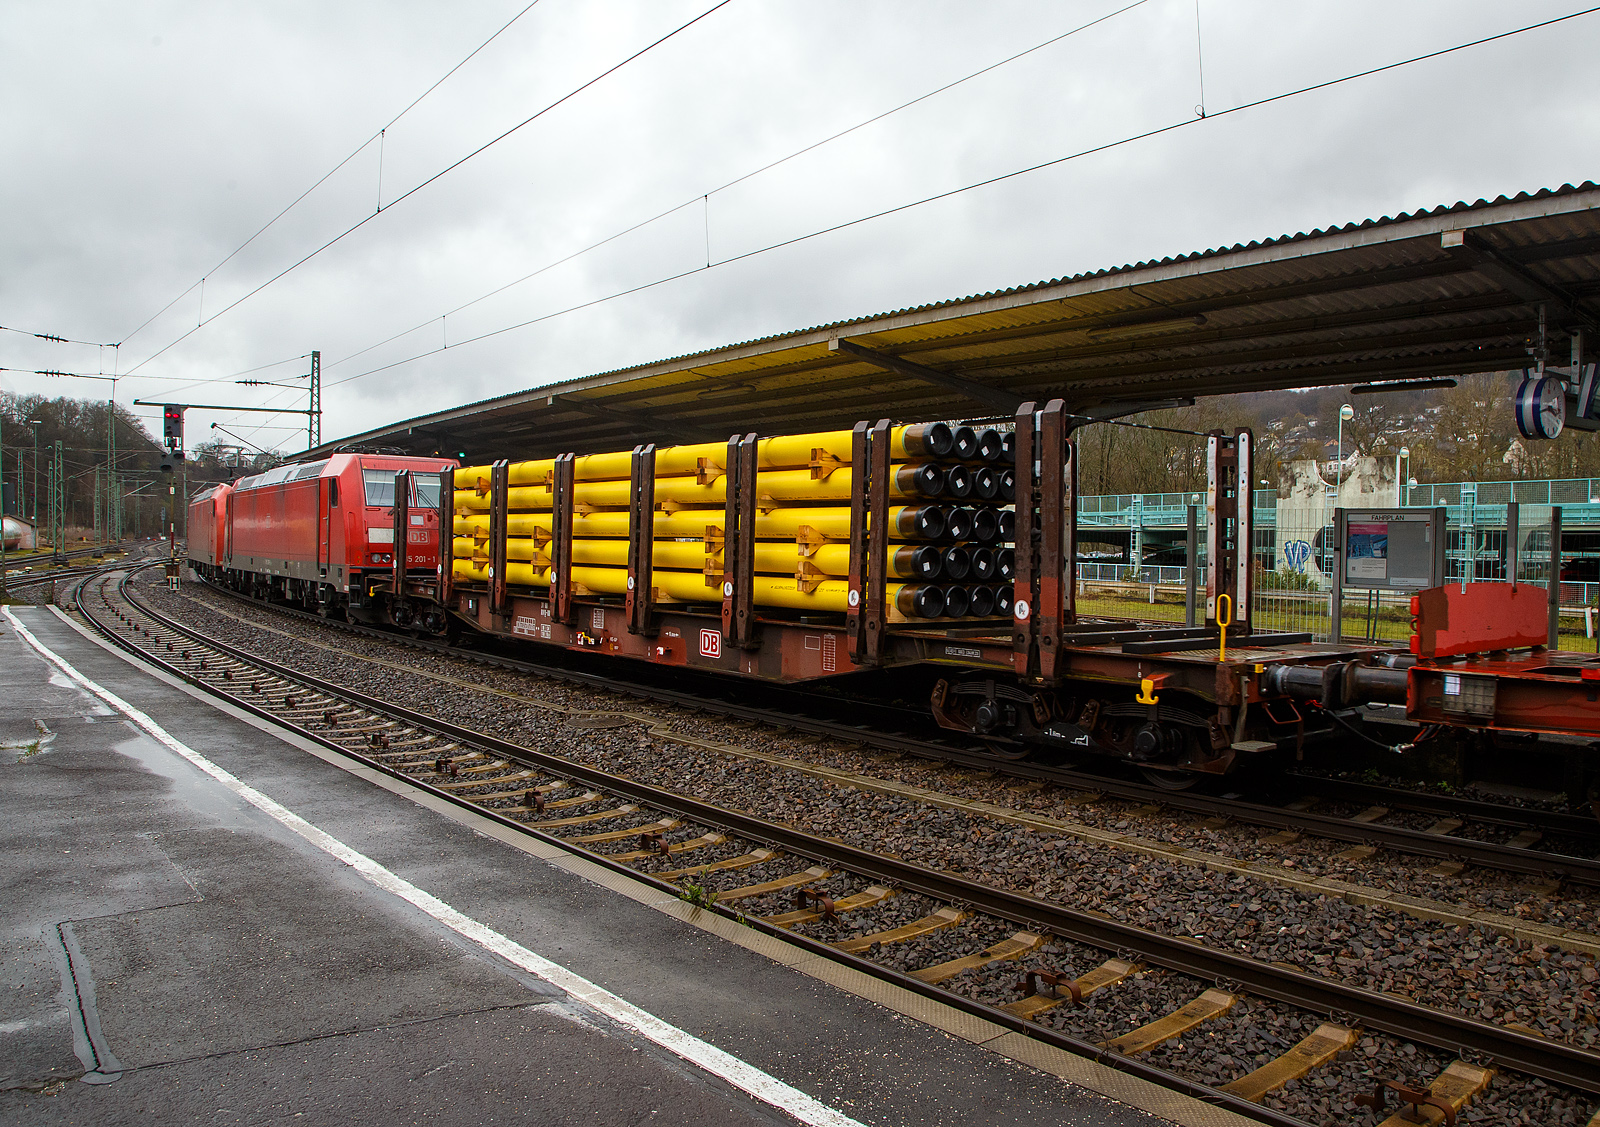 Vierachsiger Drehgestellflachwagen mit Rungen und Niederbindeeinrichtung, 31 80 4725 4xx-x D-DB, der Gattung Snps-x 719.1, der DB Cargo AG am 01.04.2023 im Zugverband bei einer Zugdurchfahrt im Bahnhof Betzdorf (Sieg). Hier beladen mit 30 gelb beschichteten Gasrohren bzw. HFI-längsnahtgeschweißte Stahlrohre Ø 323.9 x 12,7 (DN/NW 300 mm bzw. 12 ¾ Inch) mit gelber MAPEC® Polyethylen (HDPE)-Umhüllung), in Herstellungslänge vom 12 m. Das Metergewicht der Rohre beträgt 97,5 kg/m (ohne Umhüllung), so ist der Wagen mit ca. 36 t beladen. Der Hersteller der Stahlrohre ist die Mannesmann Line Pipe GmbH in Siegen (ex RW Fuchs), gehört zum Salzgitter-Konzern.

Der Drehgestell-Flachwagen wurde speziell für den Transport von Rohren, Profilstahl, Flachstahlprodukten sowie Stamm- und Schnittholz entwickelt und zeichnet sich durch hohe Ladekapazität aus. Das Ladegut wird durch Rungen mit Kunststoffleisten geschont. Die Längsseiten sind jeweils mit acht besonders breiten und belastbaren Rungen ausgerüstet, die mit dem Untergestell fest verbunden sind. Zur Verzurrung des Ladegutes ist jedes Rungenpaar mit einer Niederbindeeinrichtung versehen, die von einer Person bedient werden kann. Für die Auflage des Ladegutes sind hölzerne Ladeschwellen im Rungenbereich und im Abstand von 1 m von Wagenende vorhanden. Außerdem sind feste 5 mm niedrigere Hilfsladeschwellen zwischen den Rungen zur Unterstützung von leicht durchhängendem Ladegut (z. B. Schnittholz) angeordnet. Die Ladeschwellen sind genügend hoch, so dass die handelsüblichen Umschlagmittel verwendet werden können. Der Wagenboden ist mit einem begehbaren Loch- bzw. Riffelblech vollständig abgedeckt. Zur Aufnahme von Lasten oder zum Befahren mit Flurförderfahrzeugen sind die Abdeckungen nicht geeignet. 

TECHNISCHE DATEN:
Gattung: Snps-x 719.1
Spurweite: 1.435 mm (Normalspur)
Länge über Puffer: 20.840 mm
Drehzapfenabstand: 15.800 mm
Radsatzstand in den Drehgestellen: 1.800 mm
Ladelänge: 19.600 mm
Ladebreite: 2.723 mm (zwischen den Rungen)
Fußbodenhöhe über SO: 1.280 mm (OK Ladeschwelle)
Rungenhöhe: 2.000 mm
Eigengewicht: 23.950 kg 
Zuladung bei Lastgrenze S: 63 t (ab Streckenklasse D) 
Max. Geschwindigkeit: 100 km/h / 120 km/h (leer)
Kleinster Gleisbogenhalbmesser:	35 m
Bauart der Bremse: KE-GP
Verwendungsfähigkeit: RIV
